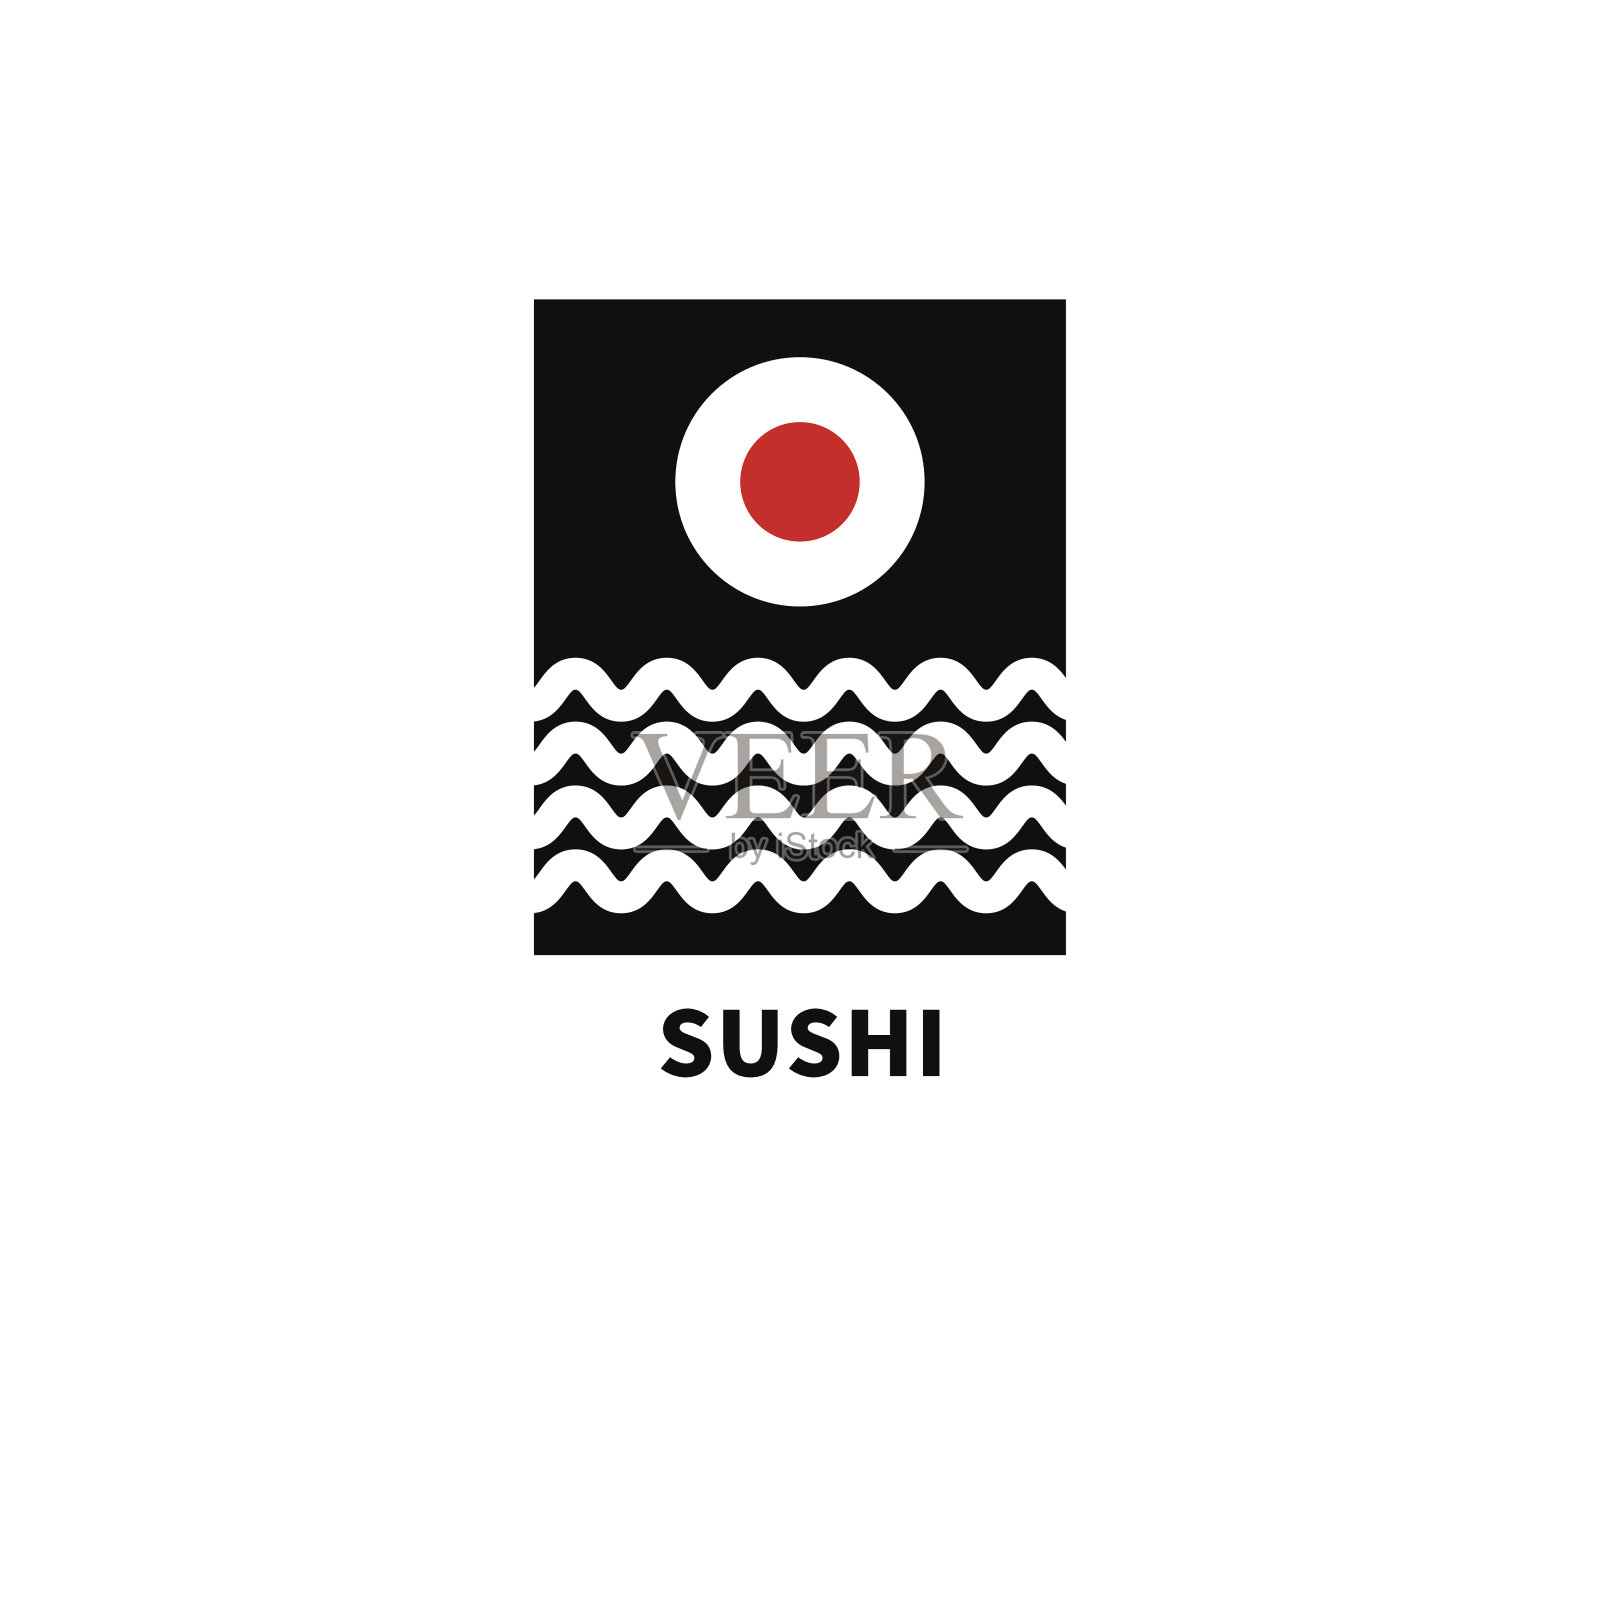 太阳形状的寿司插画图片素材